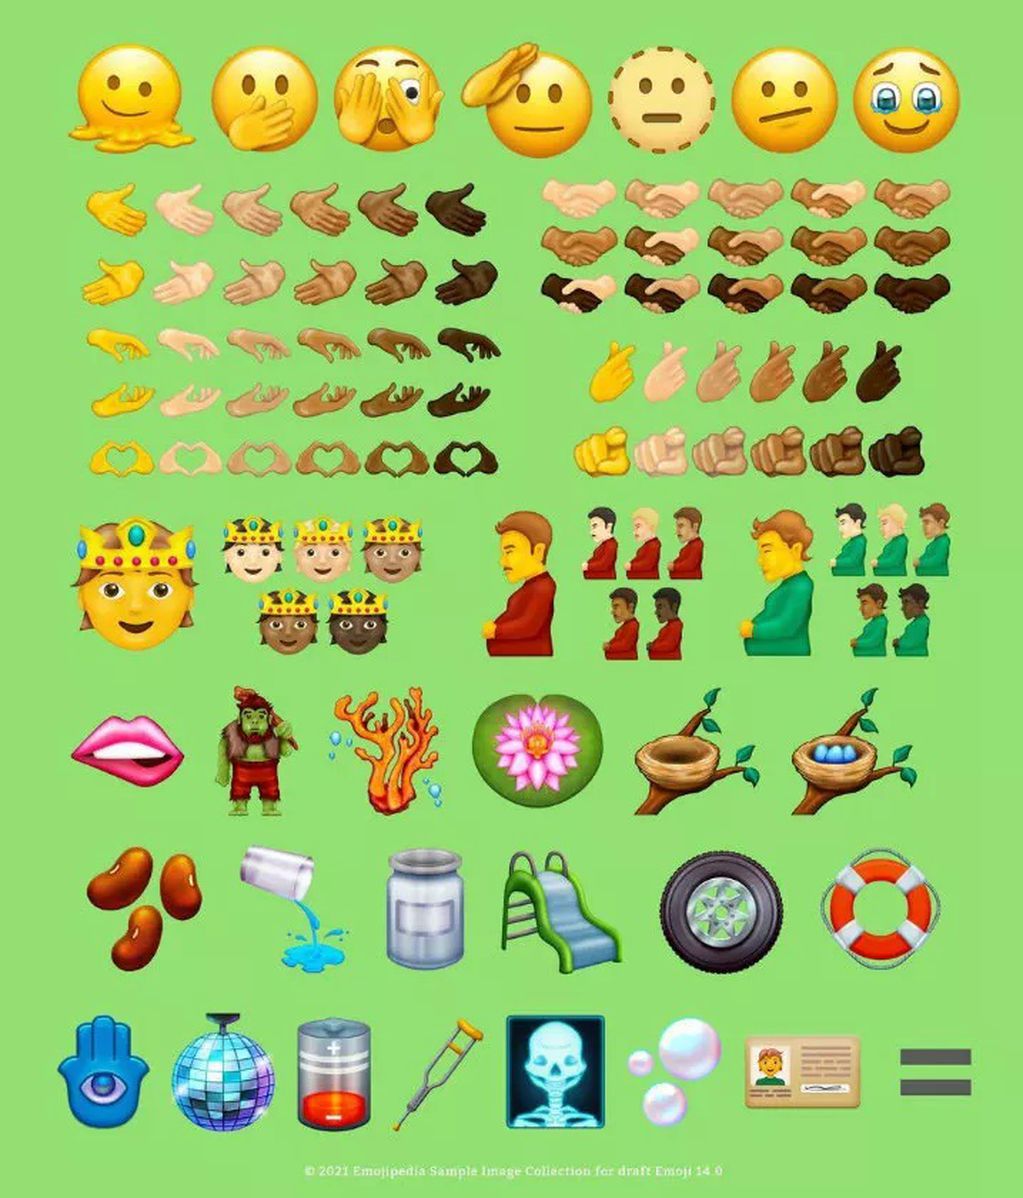 WhatsApp incorpora más de 60 emojis con su nueva actualización.